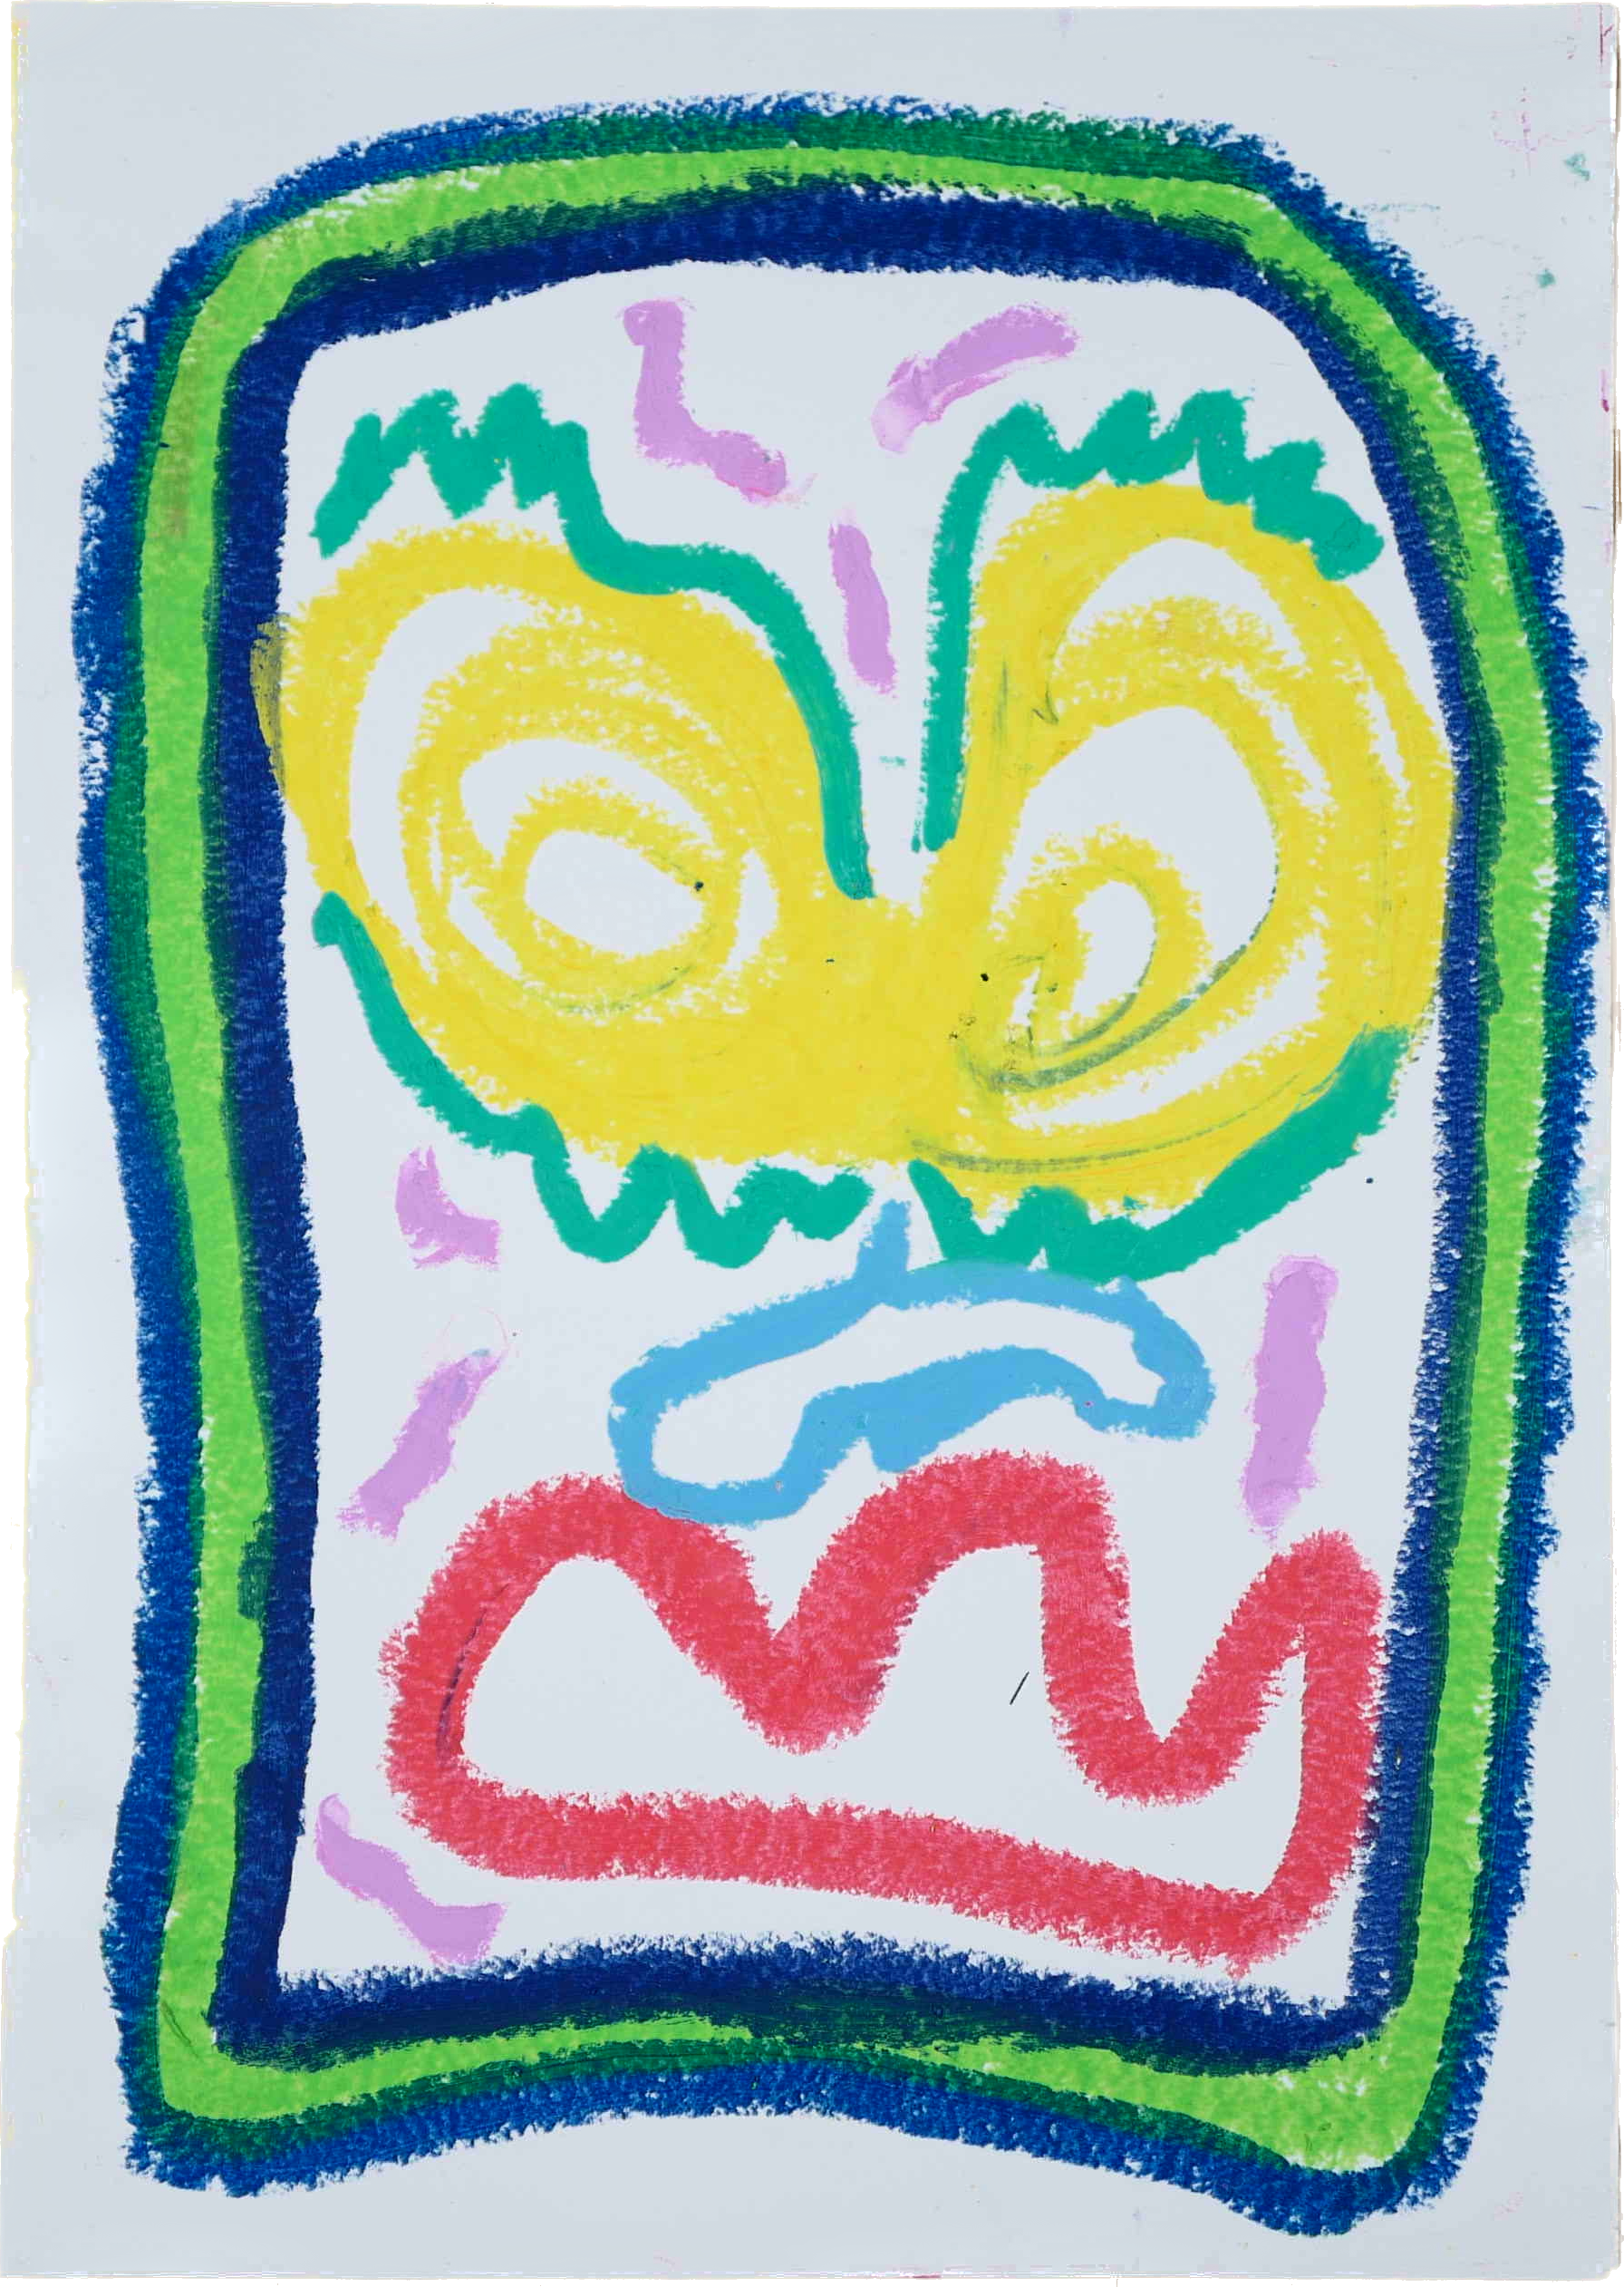 "Lenfantvivant abstract oil pastel expression" "Sauna Fusion Art with vibrant color palette" "Ebullient Spectrum abstract artwork" "Abstract art with radiant outlines by Lenfantvivant" "Colorful nonrepresentational art on paper"